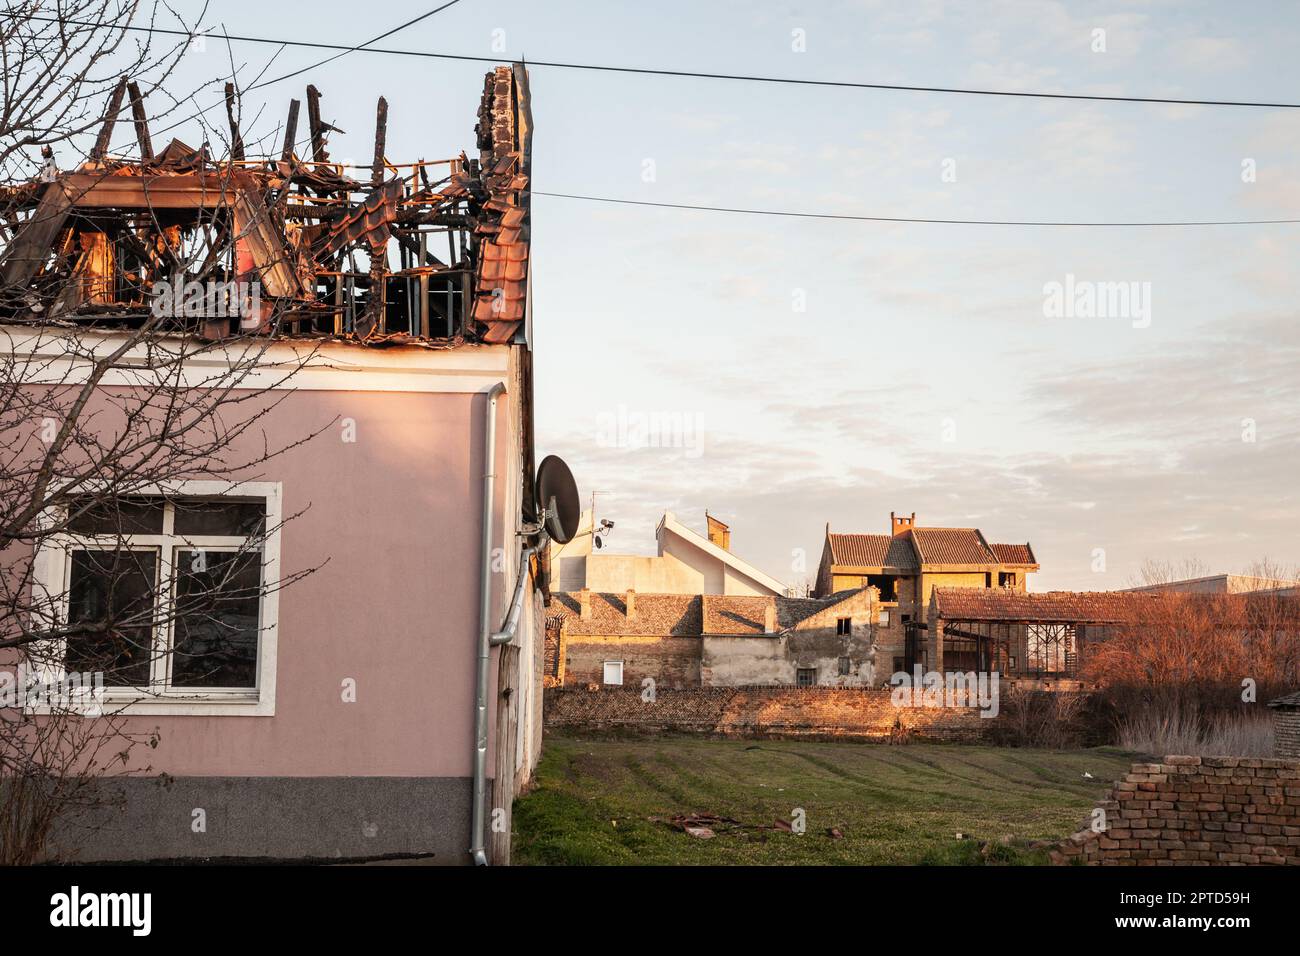 Bild eines kürzlich durch einen Brand in einem Bauernhaus im ländlichen serbien in Banatsko novo selo beschädigten und zerstörten Dachs. Stockfoto